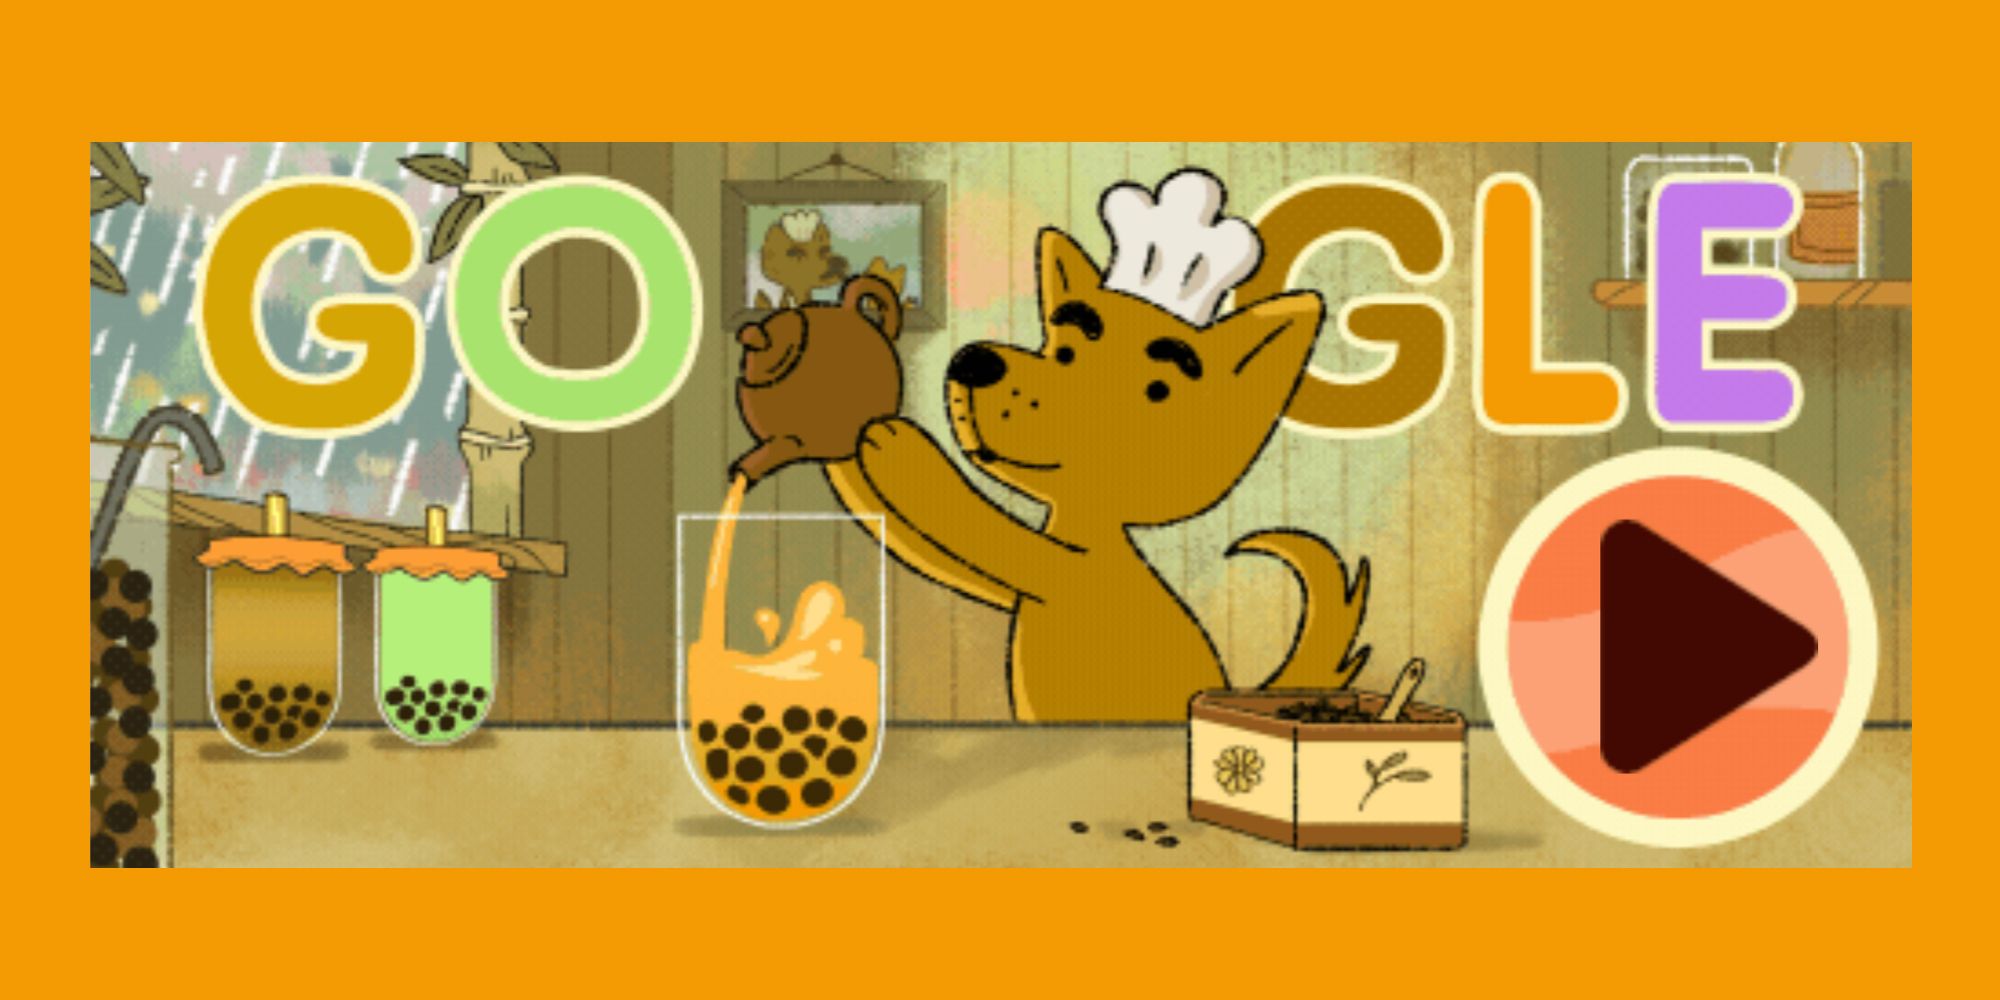 El relajante juego Google Doodle te permitirá preparar té de Boba una y otra vez